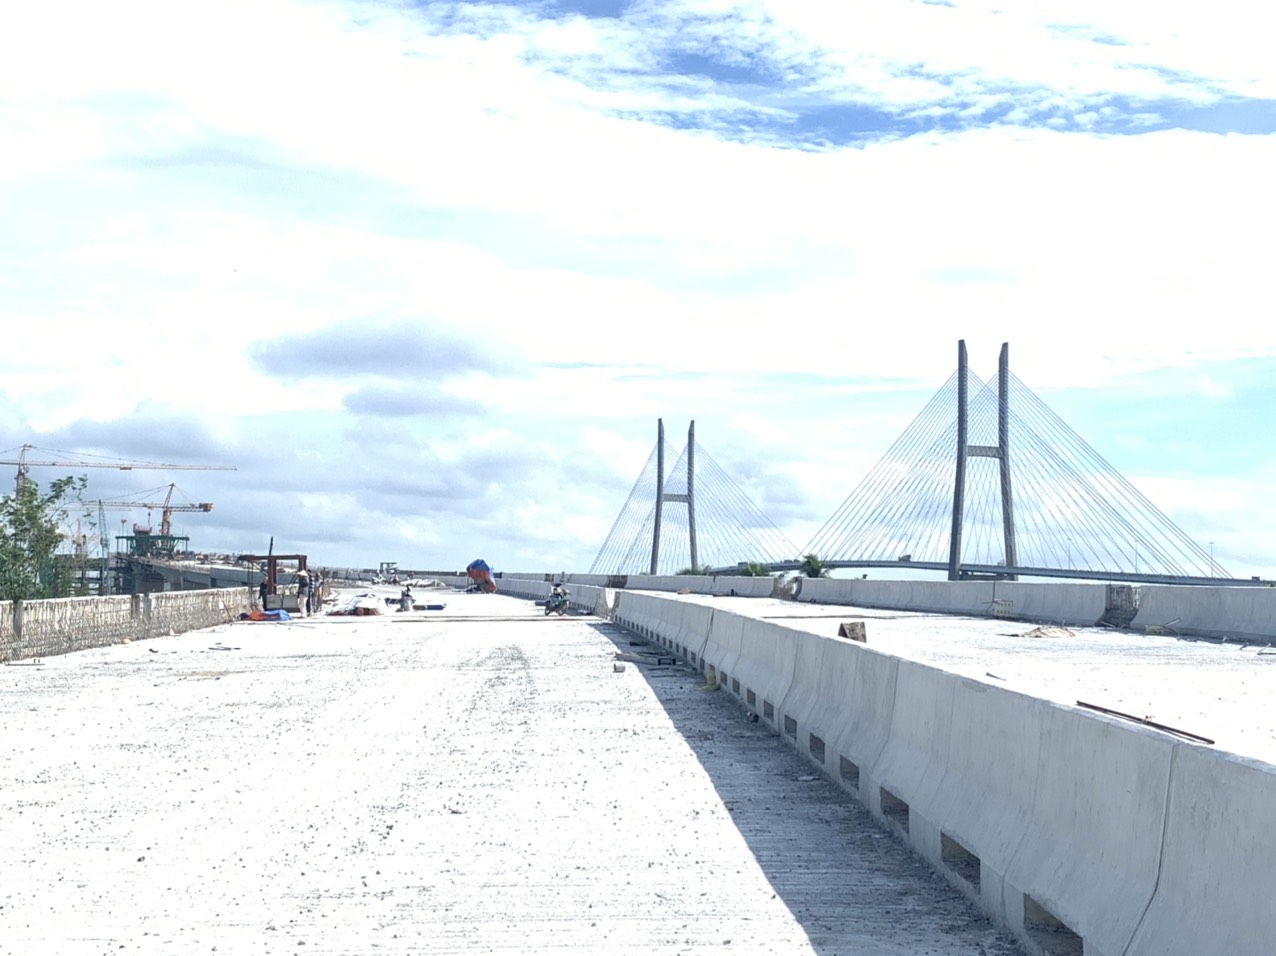 Một nhà thầu cam kết hoàn thành đúng tiến độ 4 dự án cao tốc Bắc - Nam - Ảnh 20.